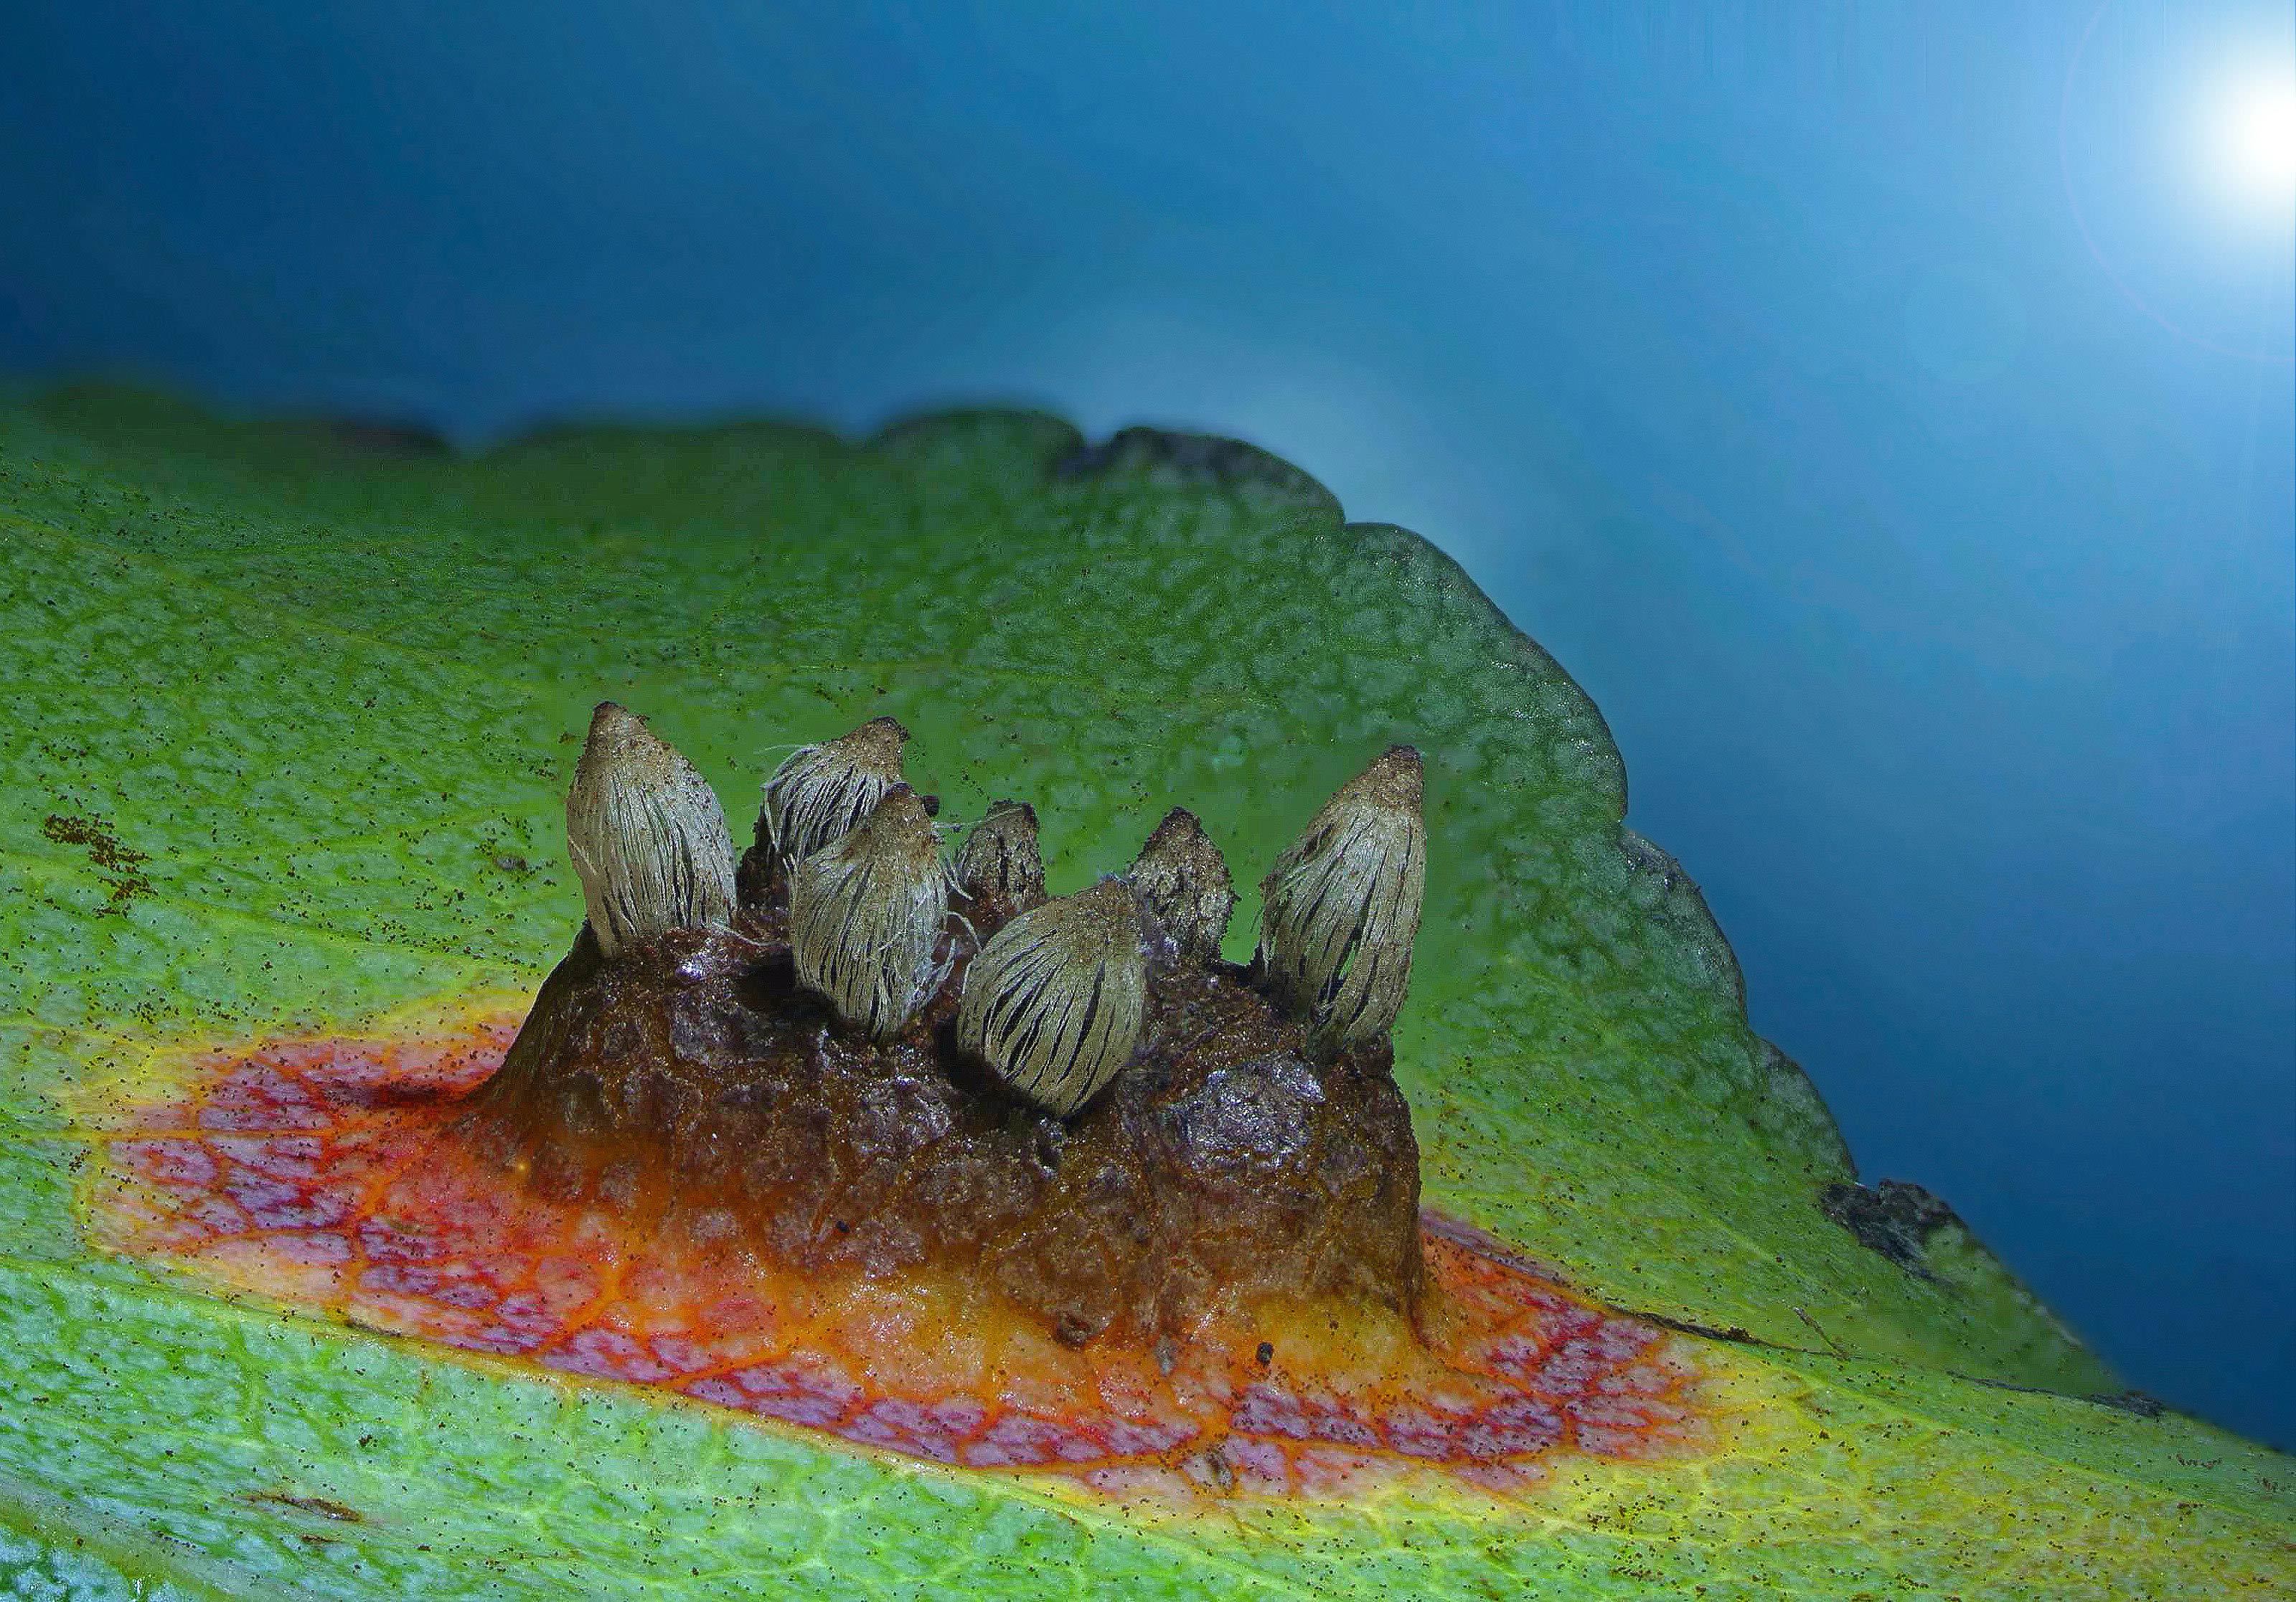 European mushrooms on a pear leaf.